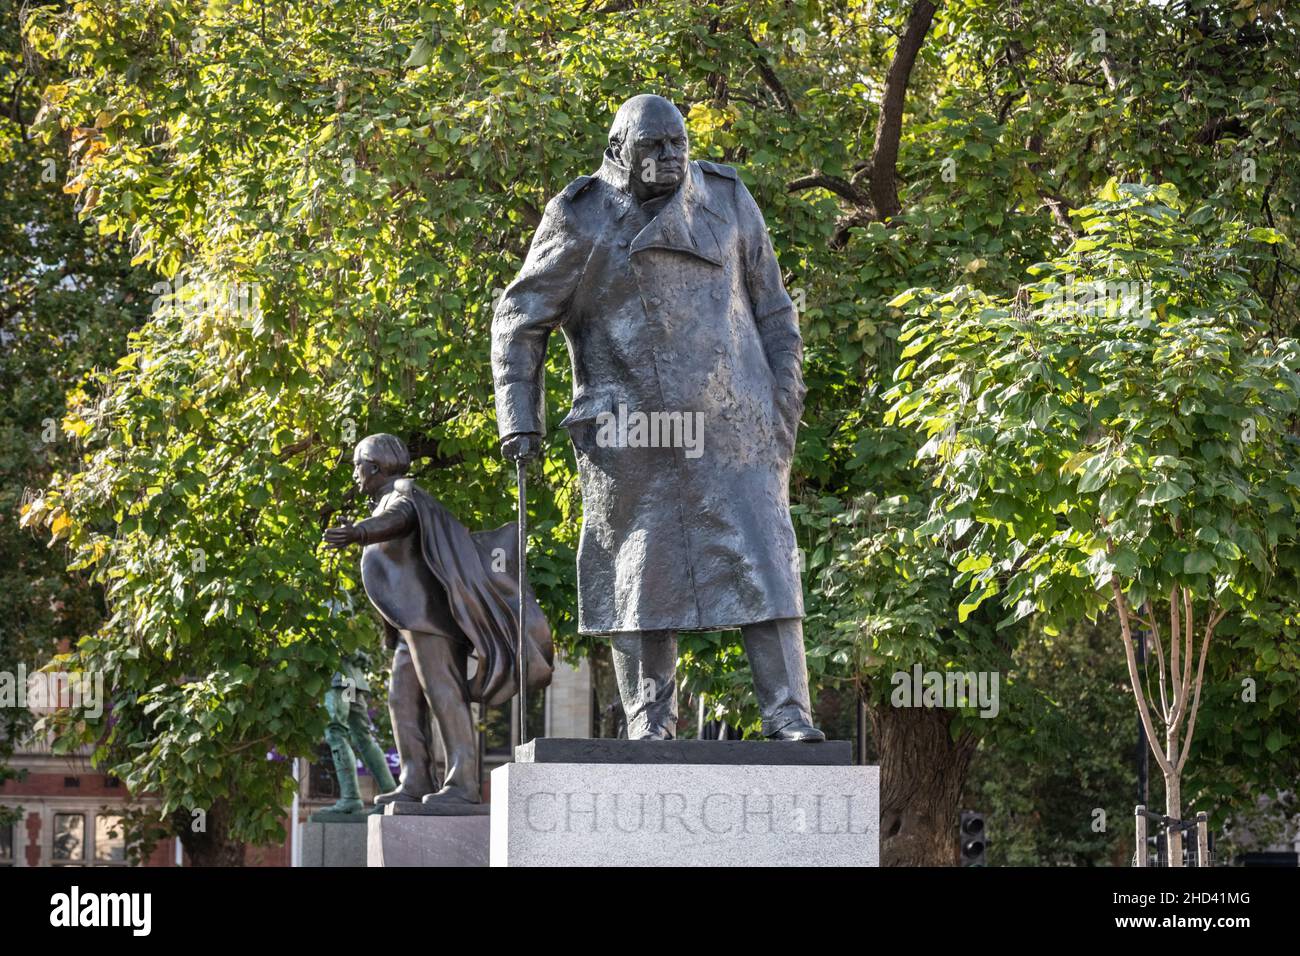 Statua in bronzo di Sir Winston Churchill, ex primo ministro britannico, Parliament Square, Westminster, Londra, Inghilterra Foto Stock